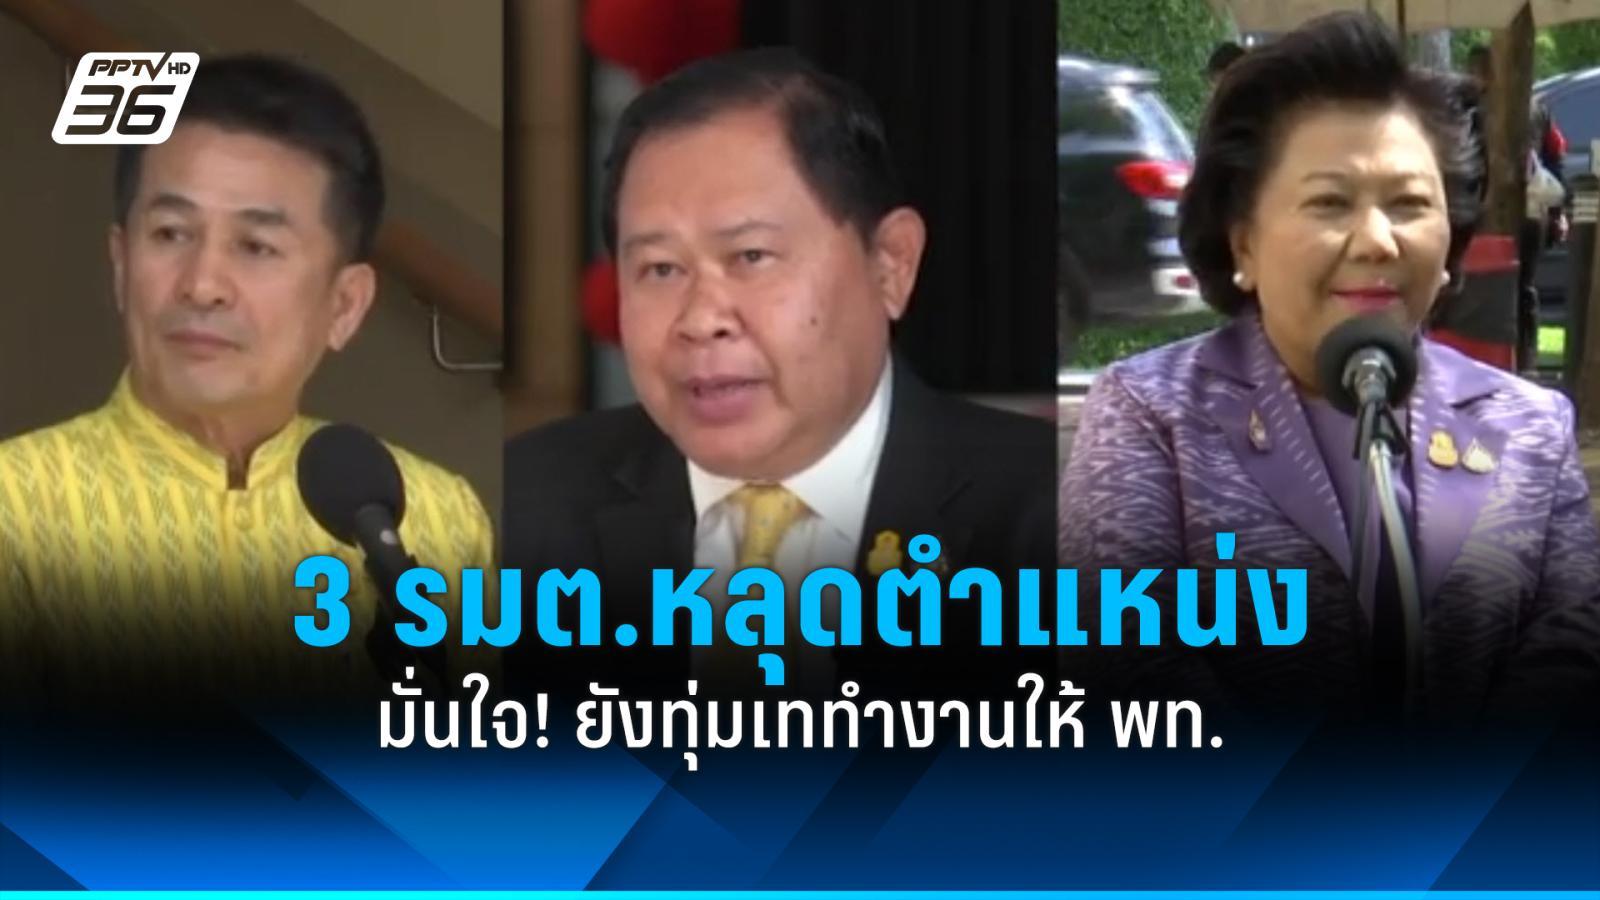 มั่นใจ 3 รัฐมนตรีหลุดตำแหน่ง ยังทุ่มเททำงานให้พรรคเพื่อไทย